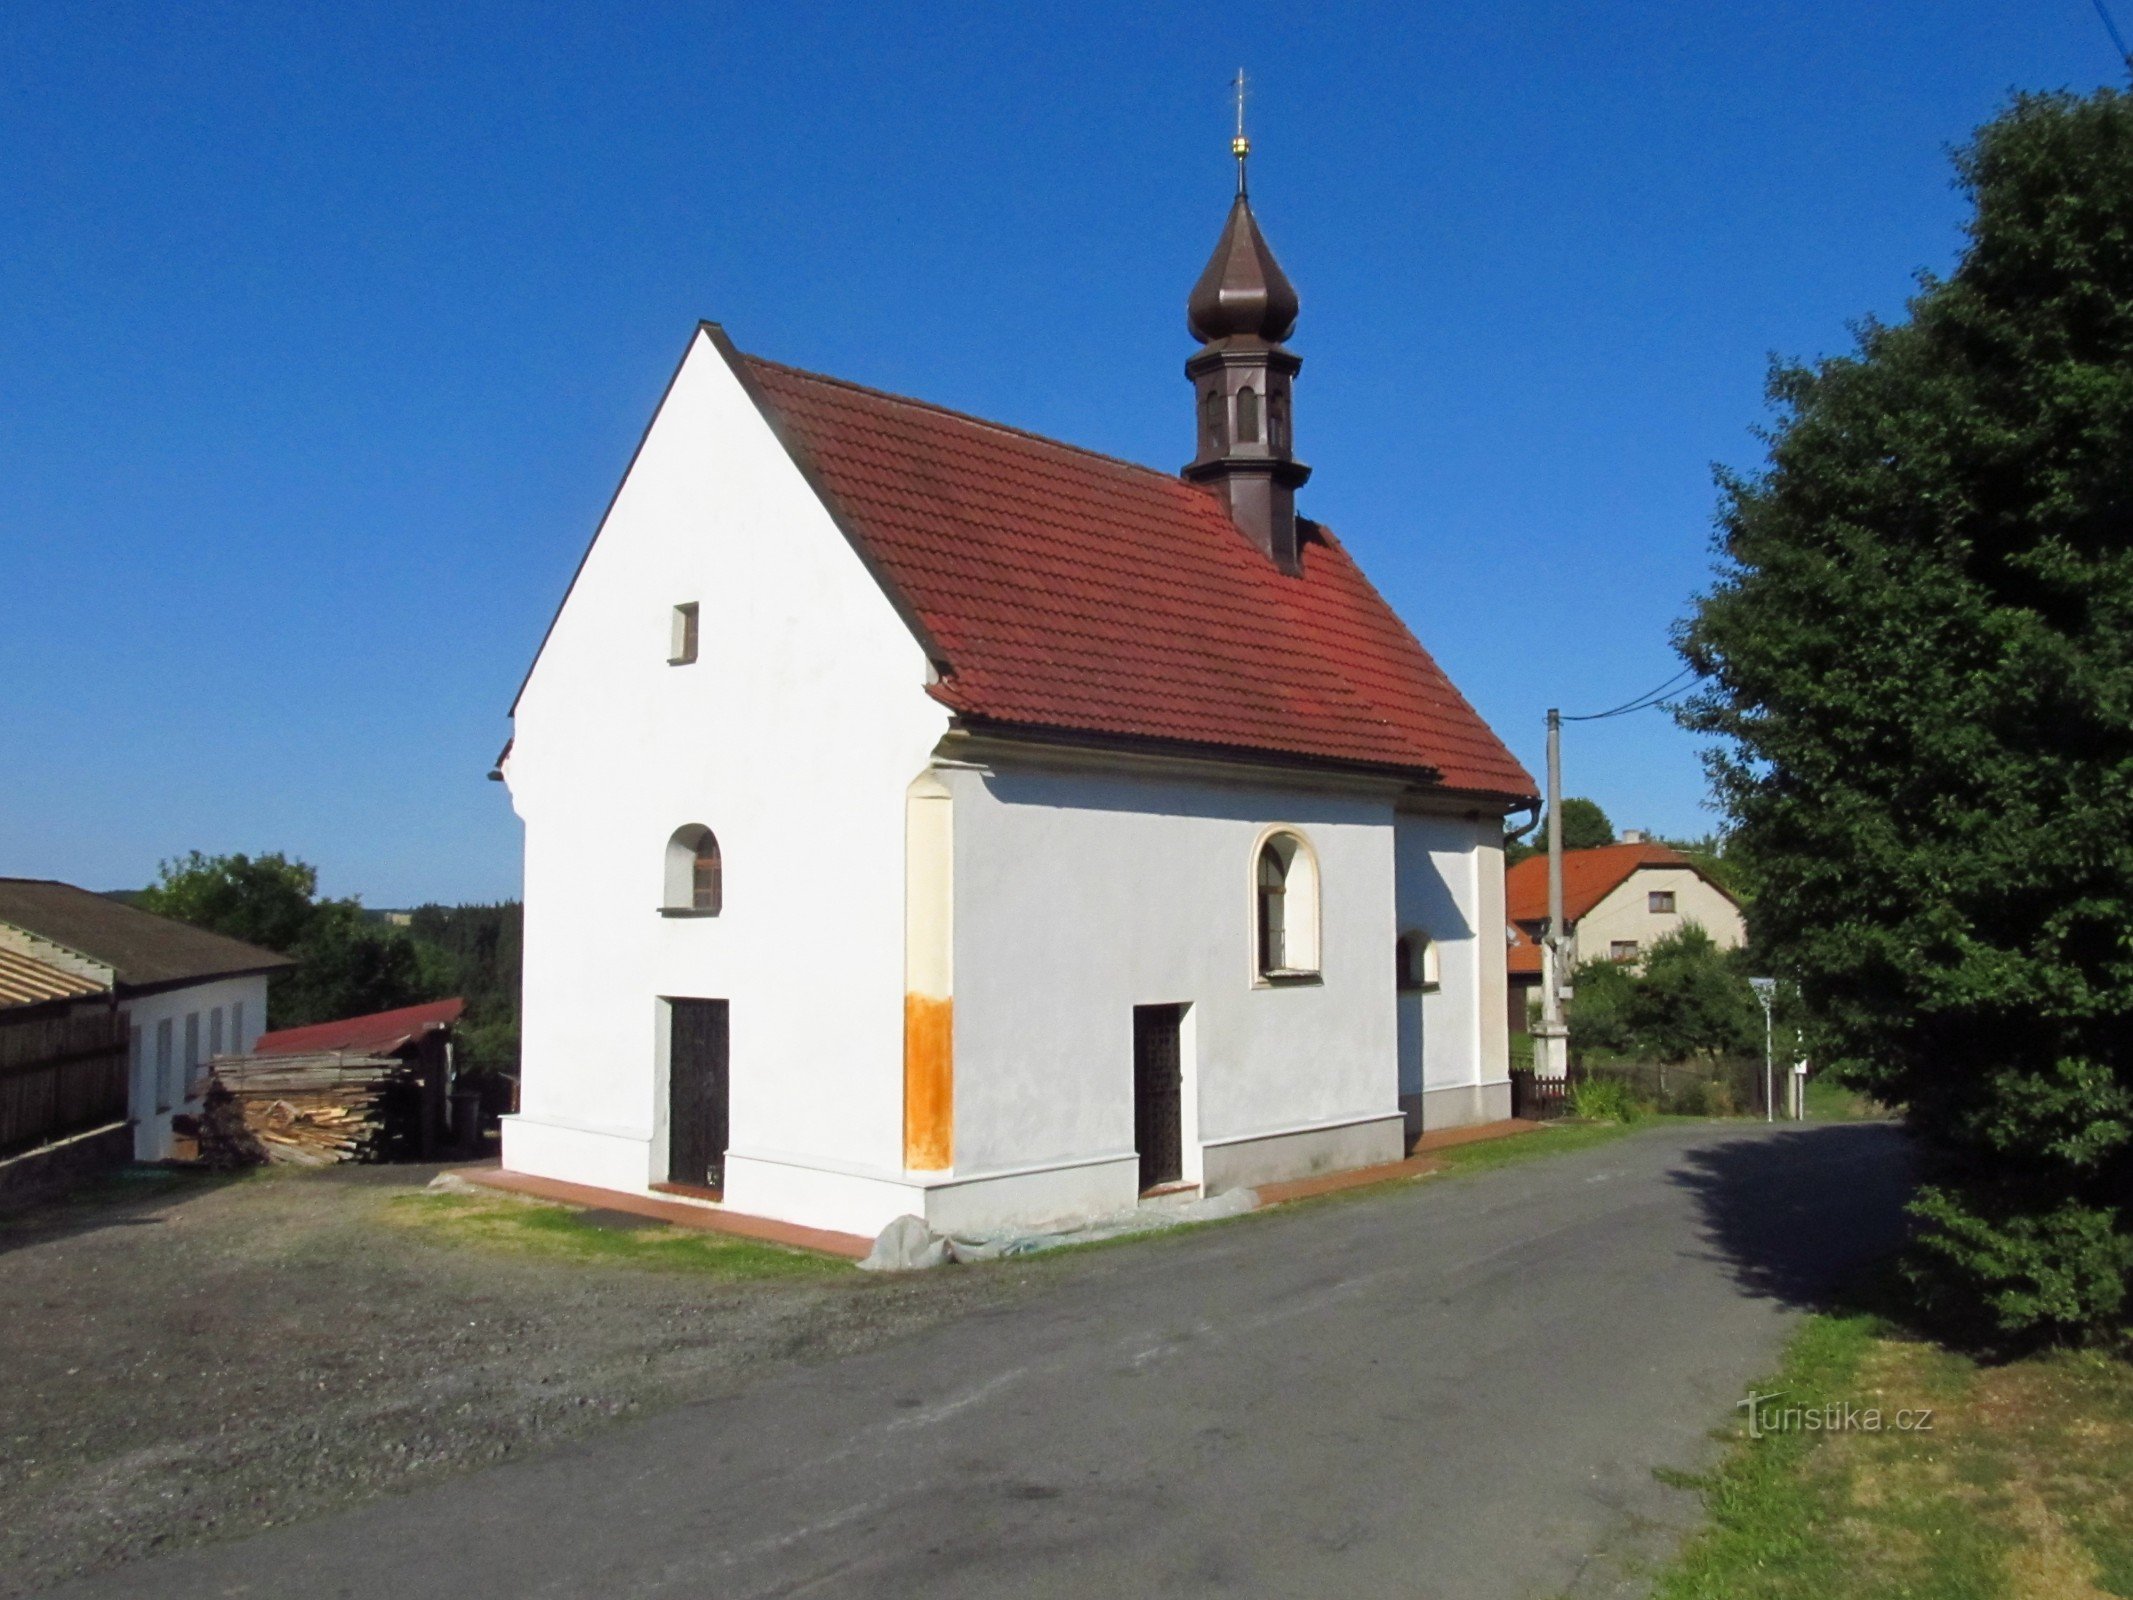 02 Εκκλησία στο Pivonice